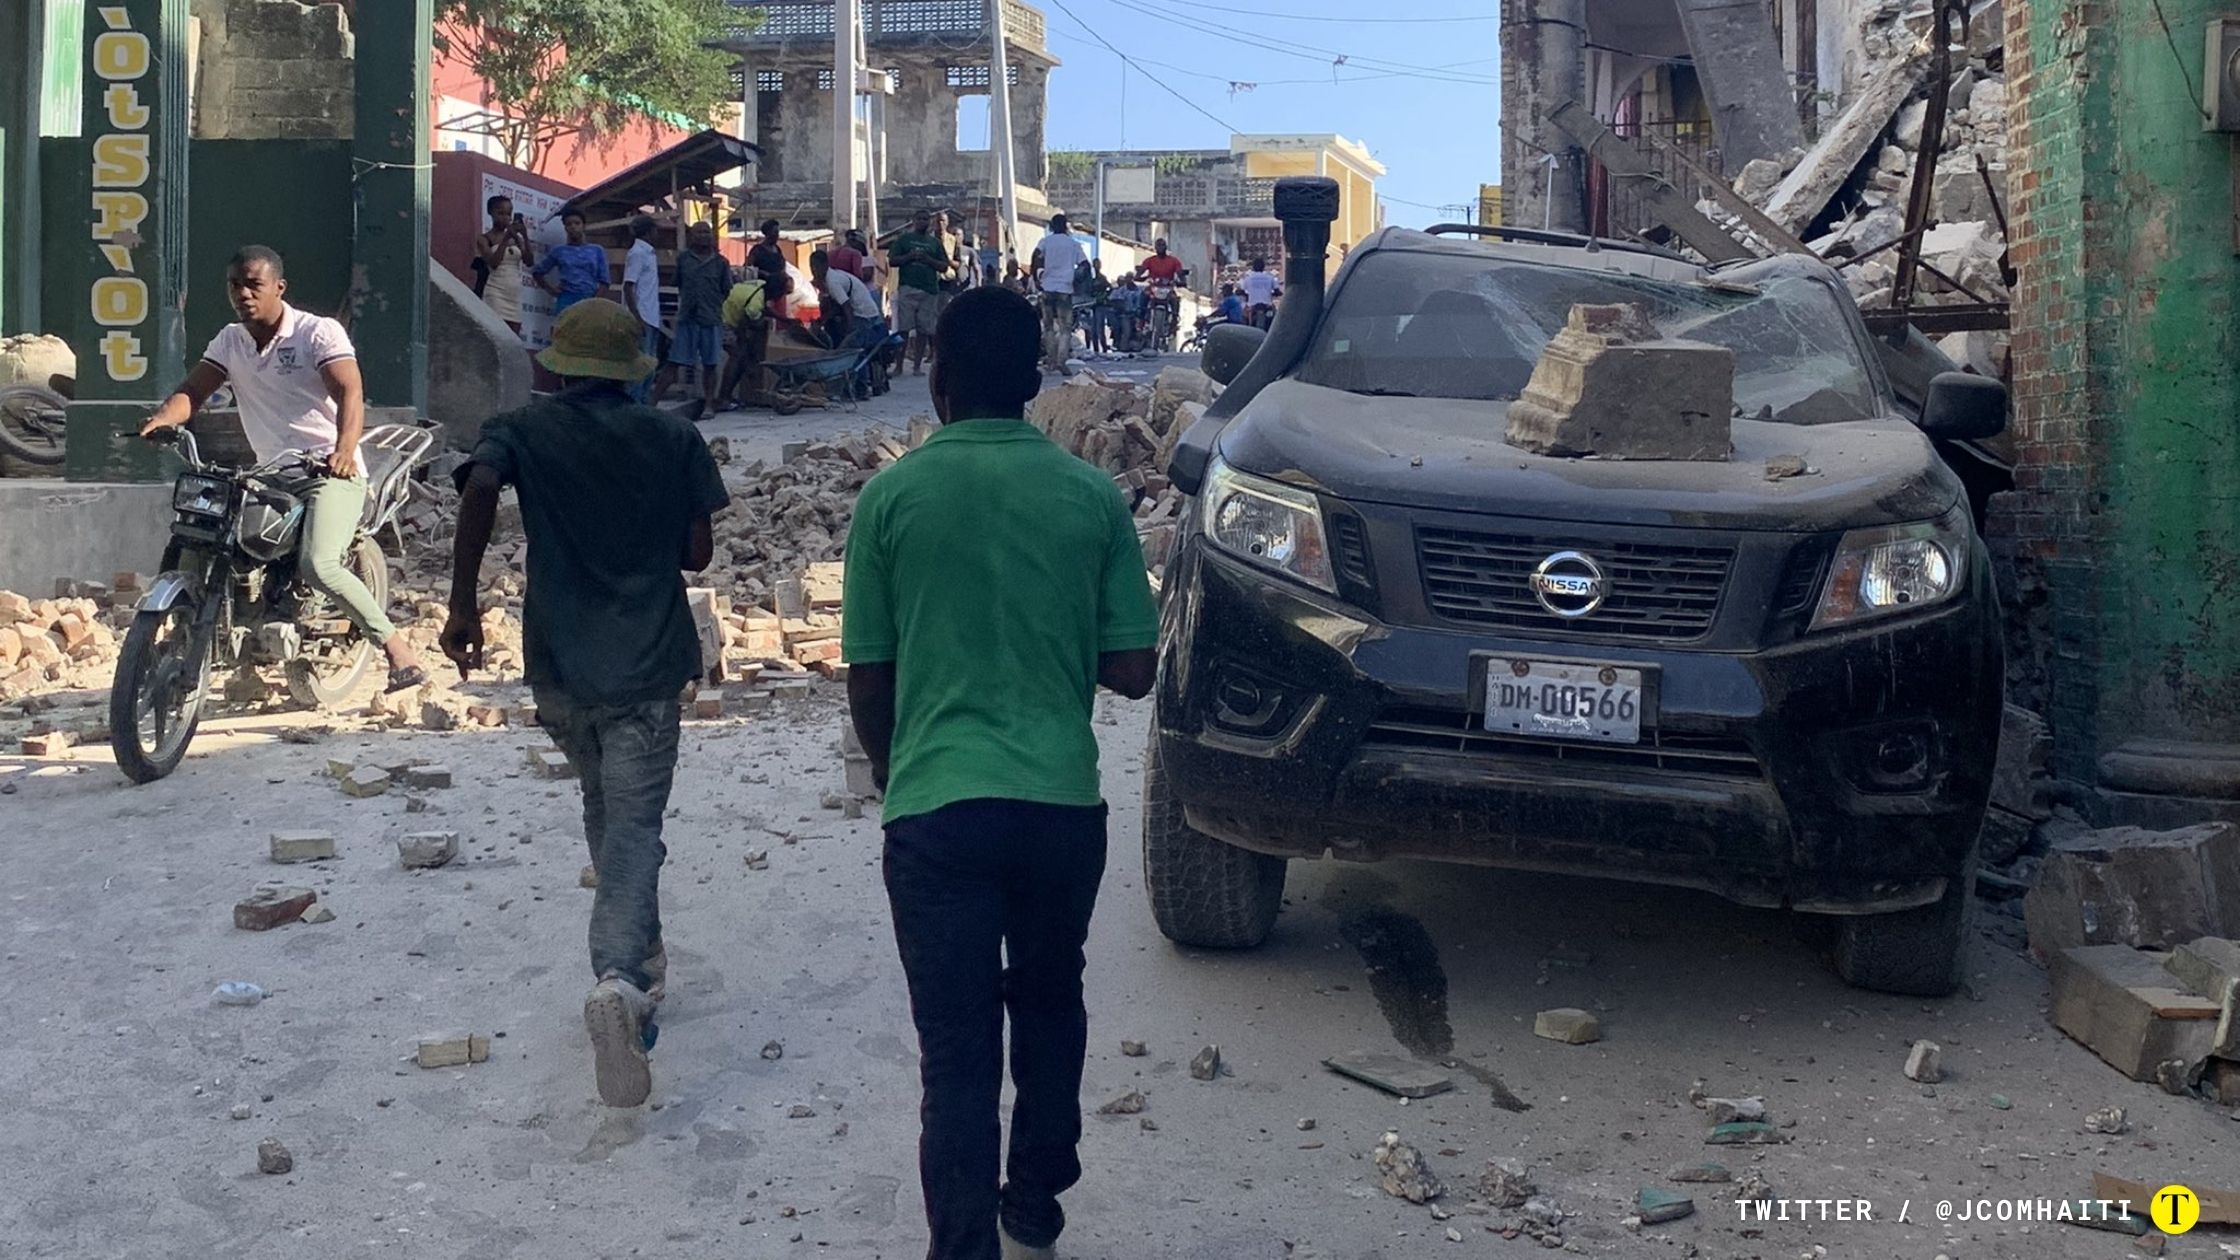 Personas corriendo por las calles de Haití entre los escombros que dejó el terremoto de magnitud 7,2. Foto Twitter / @JCOMHaiti